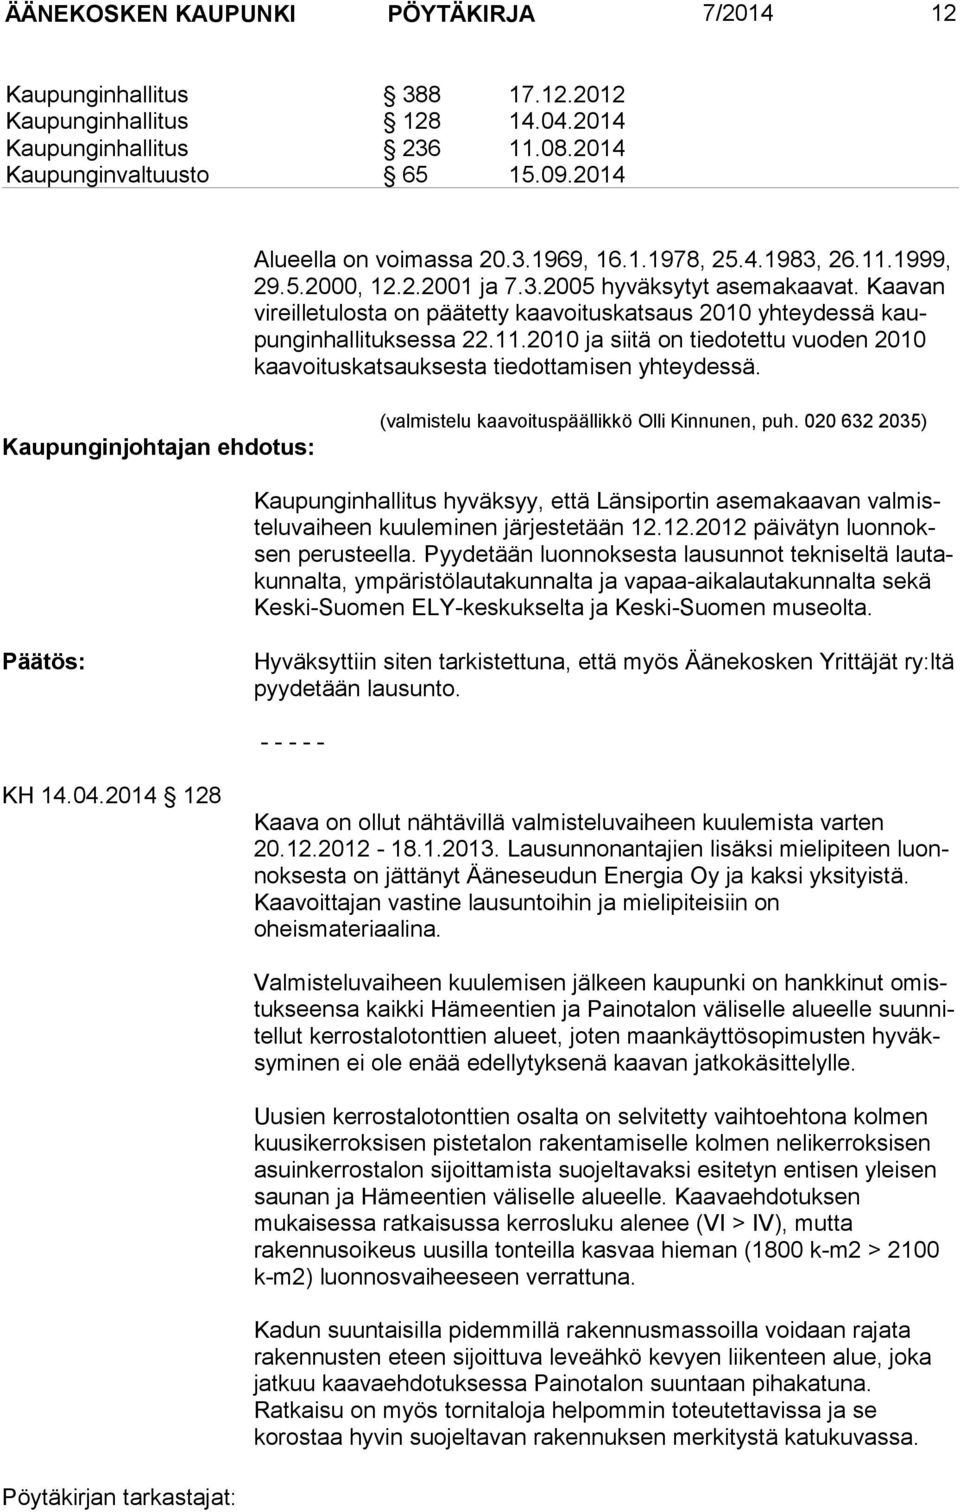 Kaupunginjohtajan ehdotus: (valmistelu kaavoituspäällikkö Olli Kinnunen, puh. 020 632 2035) Kaupunginhallitus hyväksyy, että Länsiportin asemakaavan valmisteluvaiheen kuuleminen järjestetään 12.